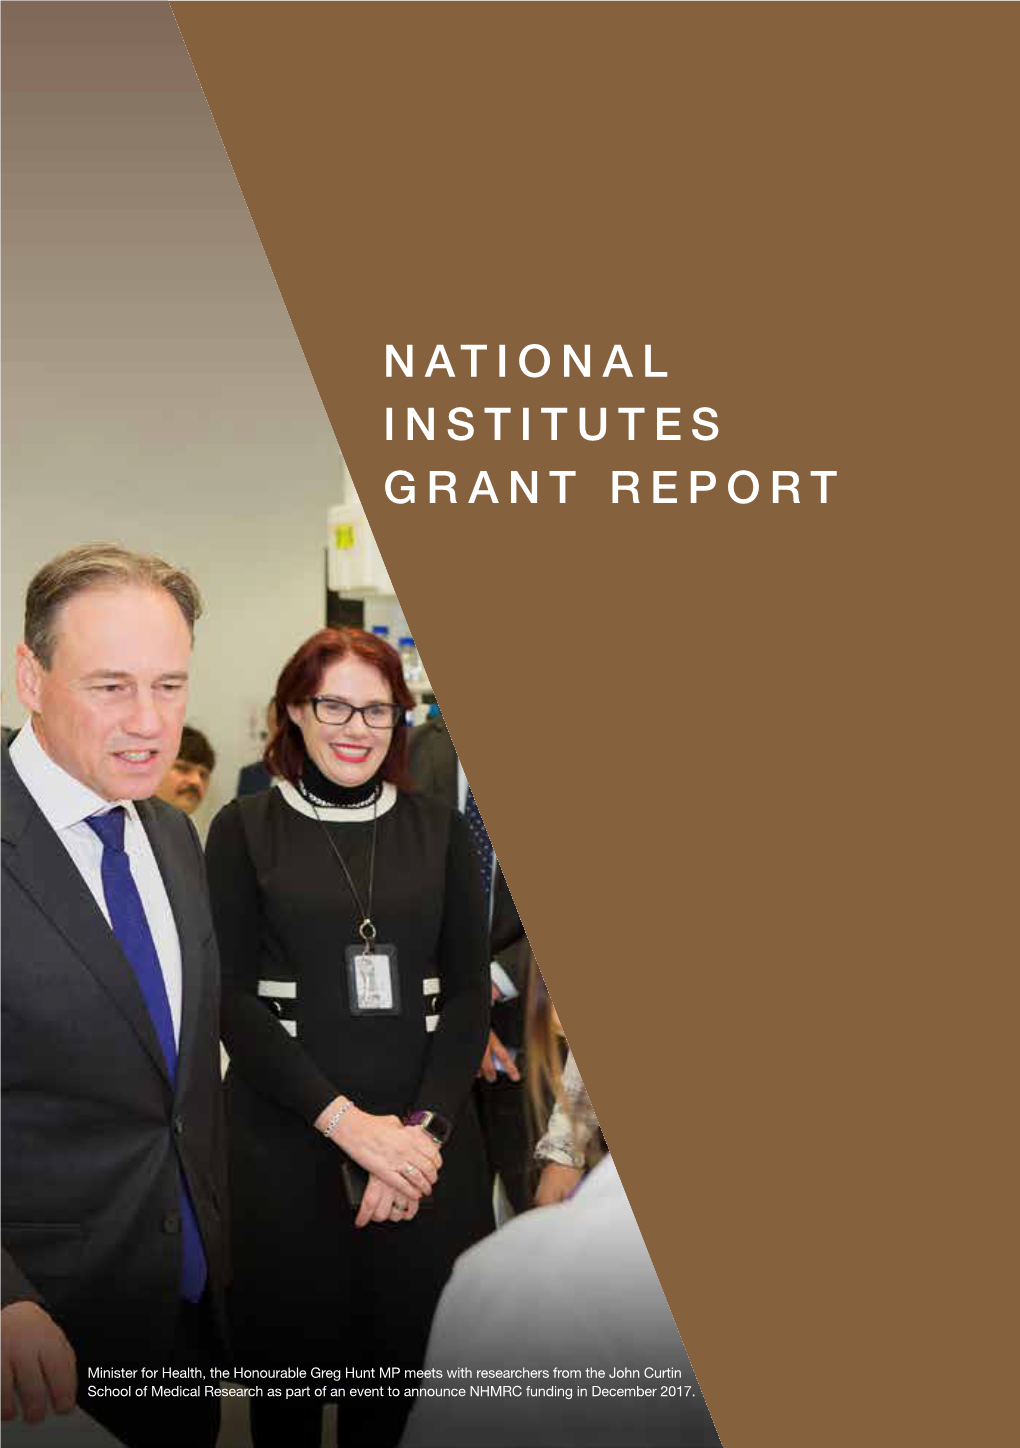 National Institutes Grant Report